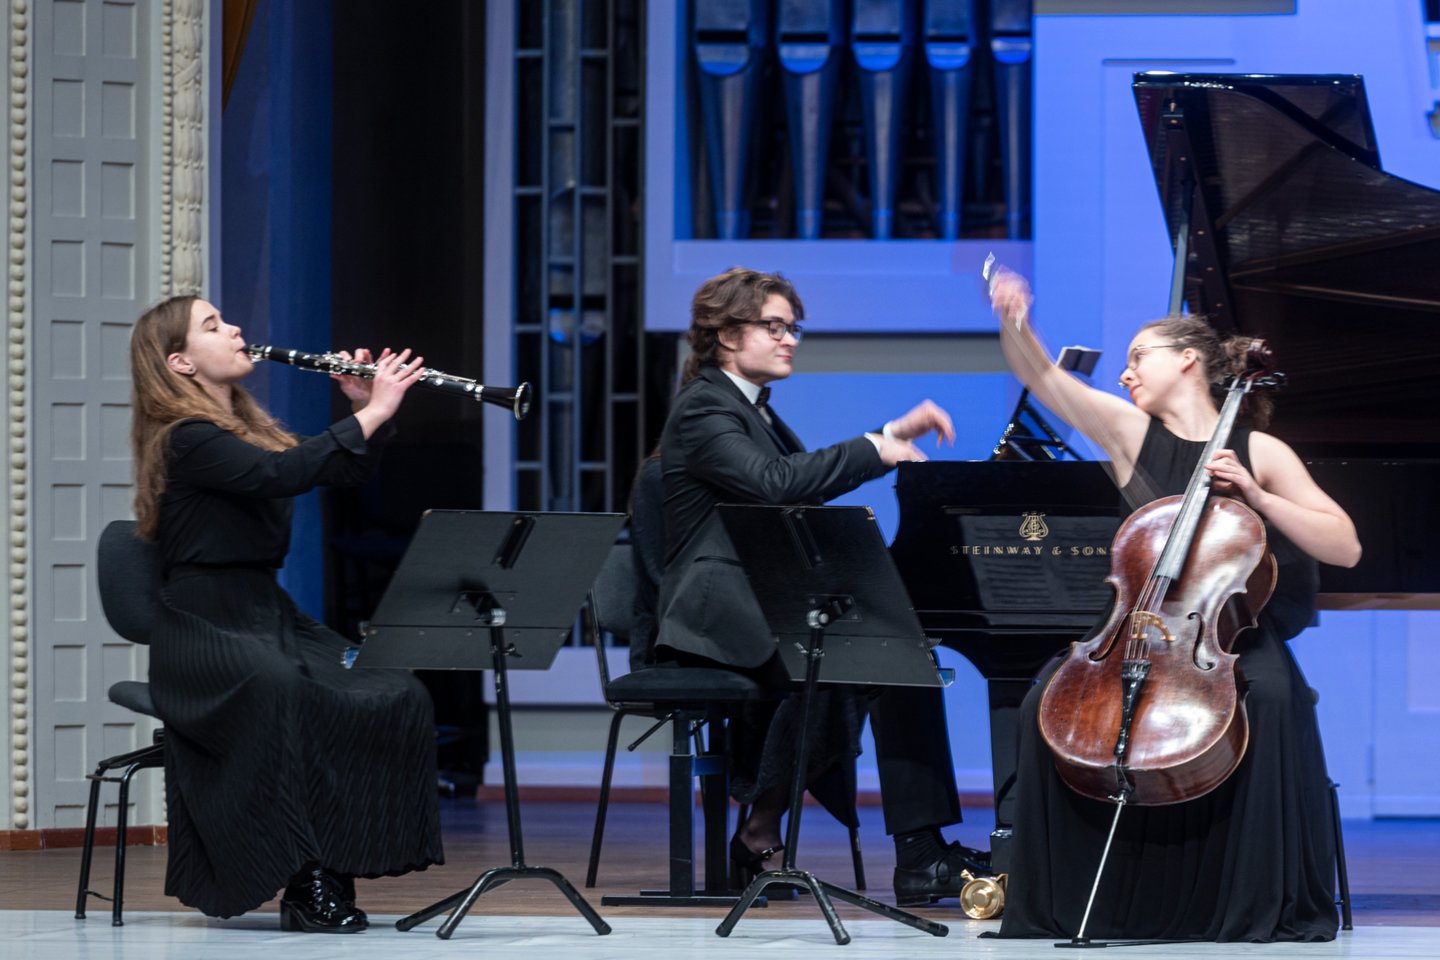  „Maestra ir jaunieji talentai“: A.Lapinskaitė, S.Poška ir R.Juknevičiūtė atliko L.van Beethoveno Trio klarnetui, violončelei ir fortepijonui.<br> D.Matvejevo nuotr.